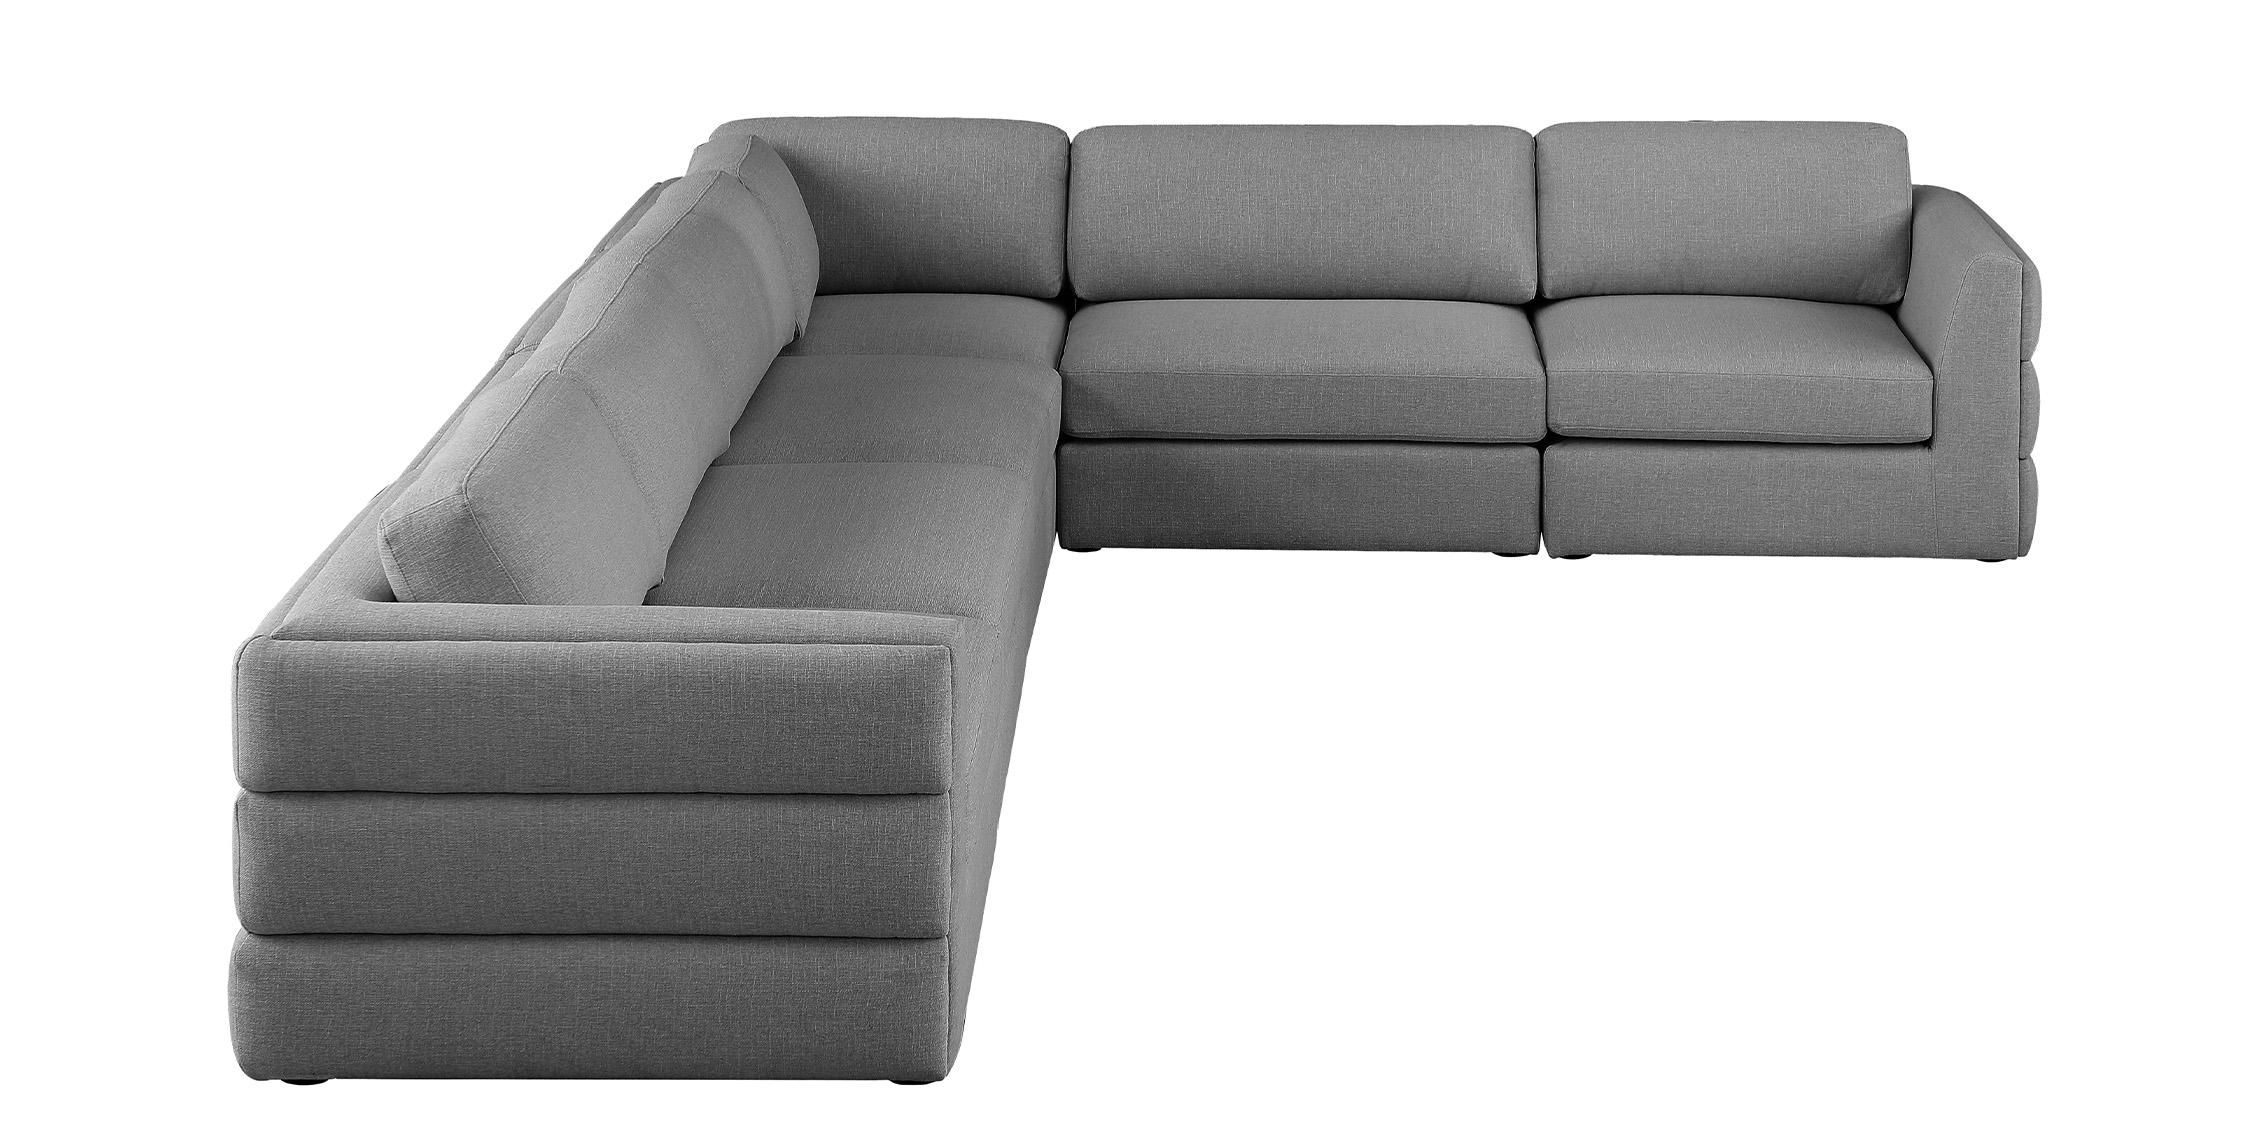 

    
Meridian Furniture BECKHAM 681Grey-Sec6D Modular Sectional Gray 681Grey-Sec6D
